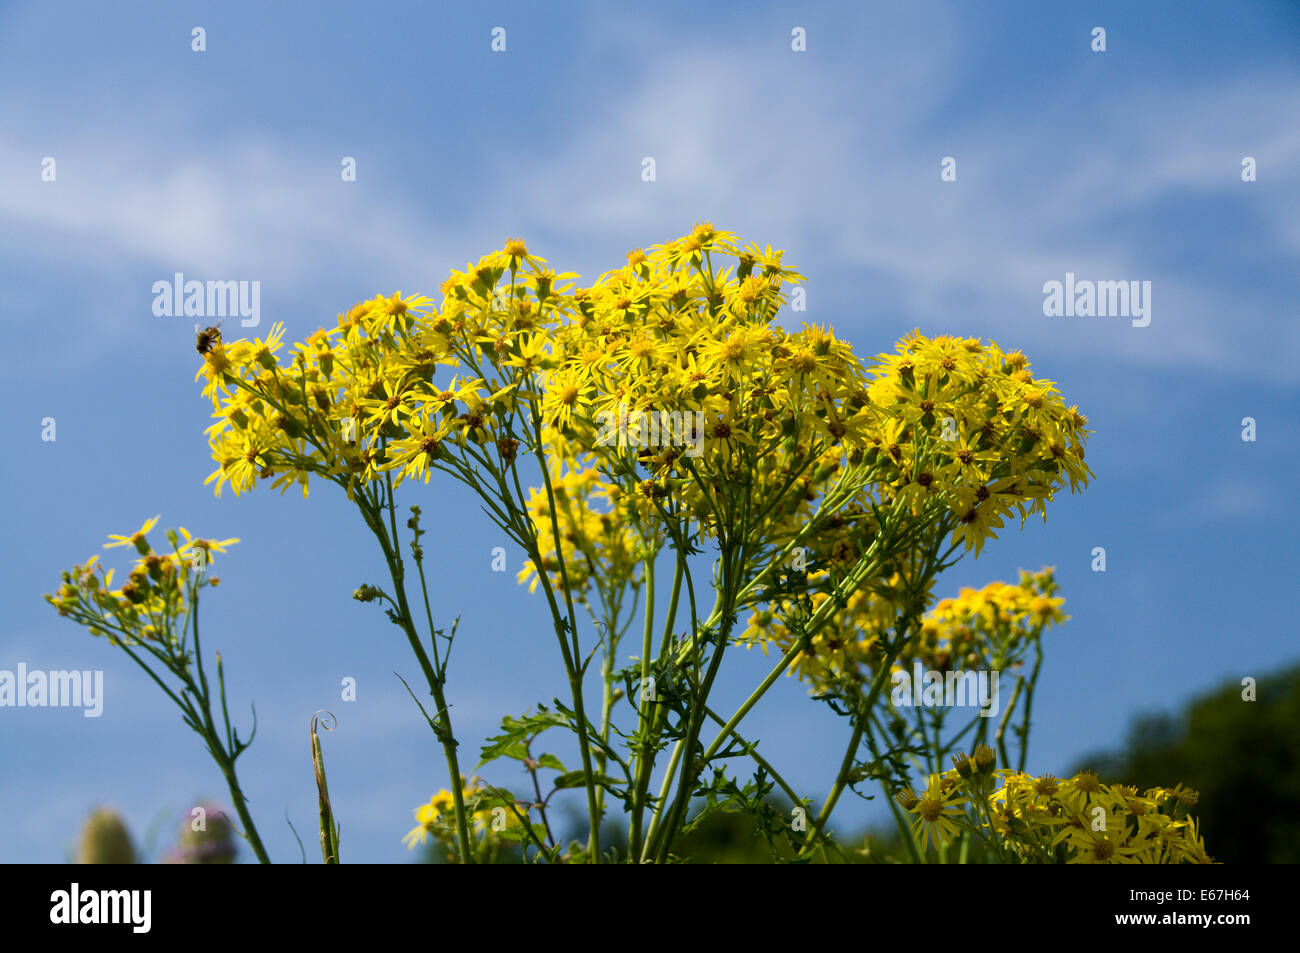 (Jacobaea séneçon vulgaris) contre le ciel bleu, Cardiff, Pays de Galles, Royaume-Uni. Banque D'Images